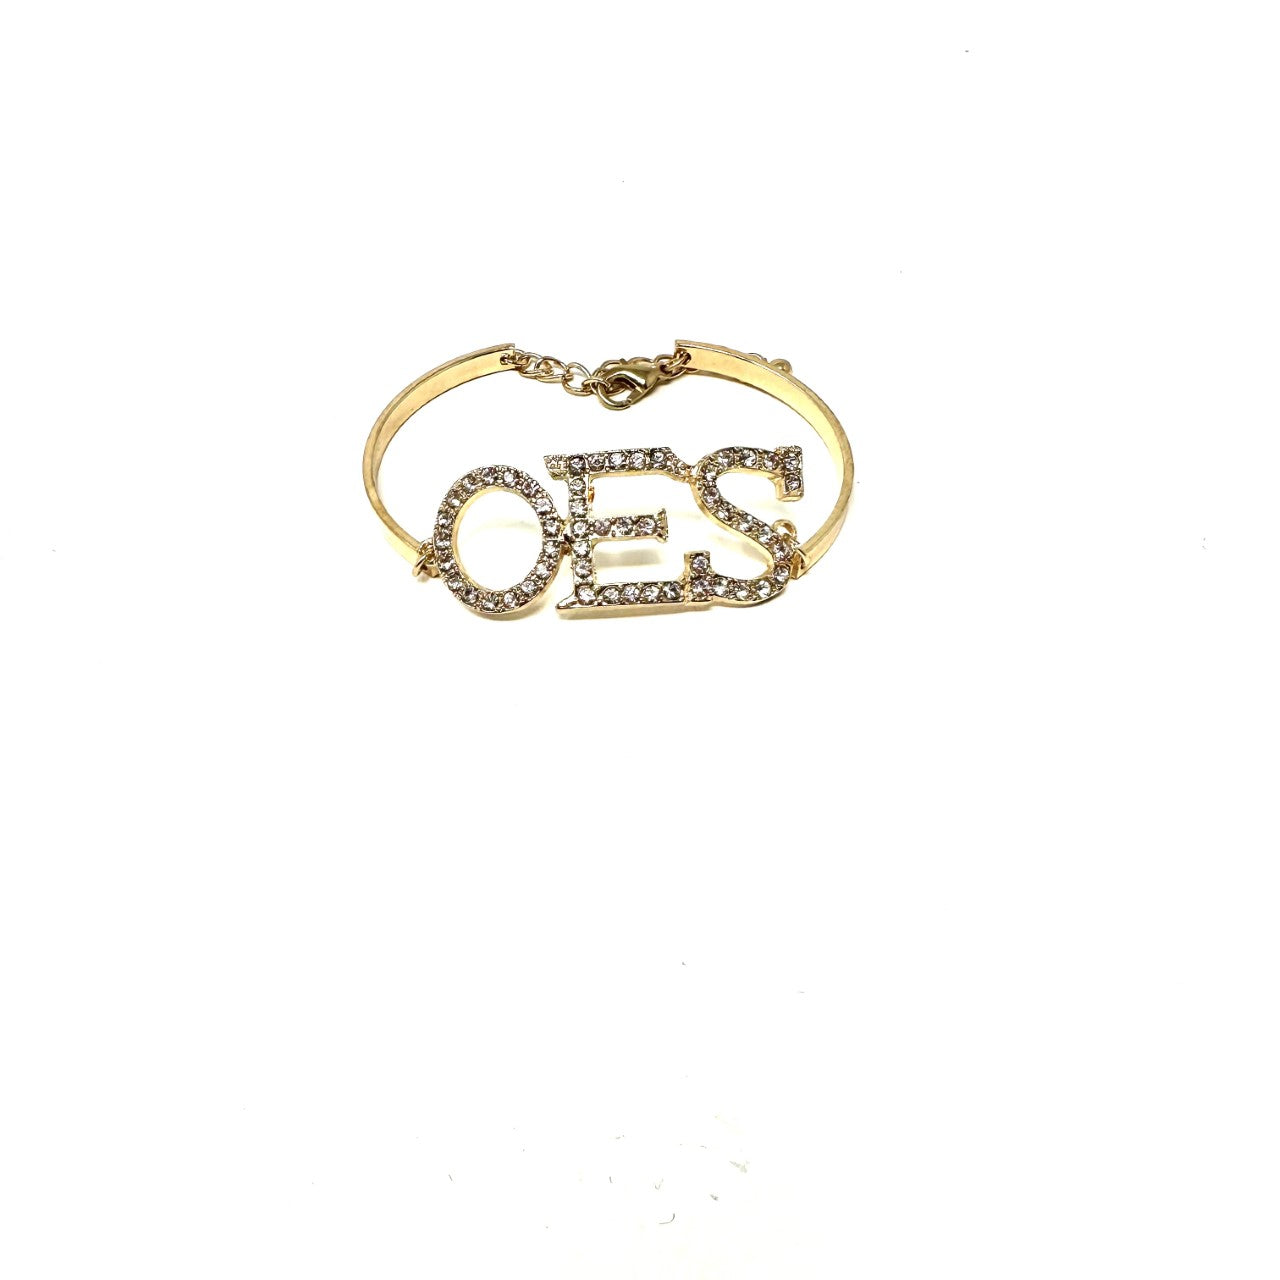 Order of Eastern Star Gold Crystal Bracelet